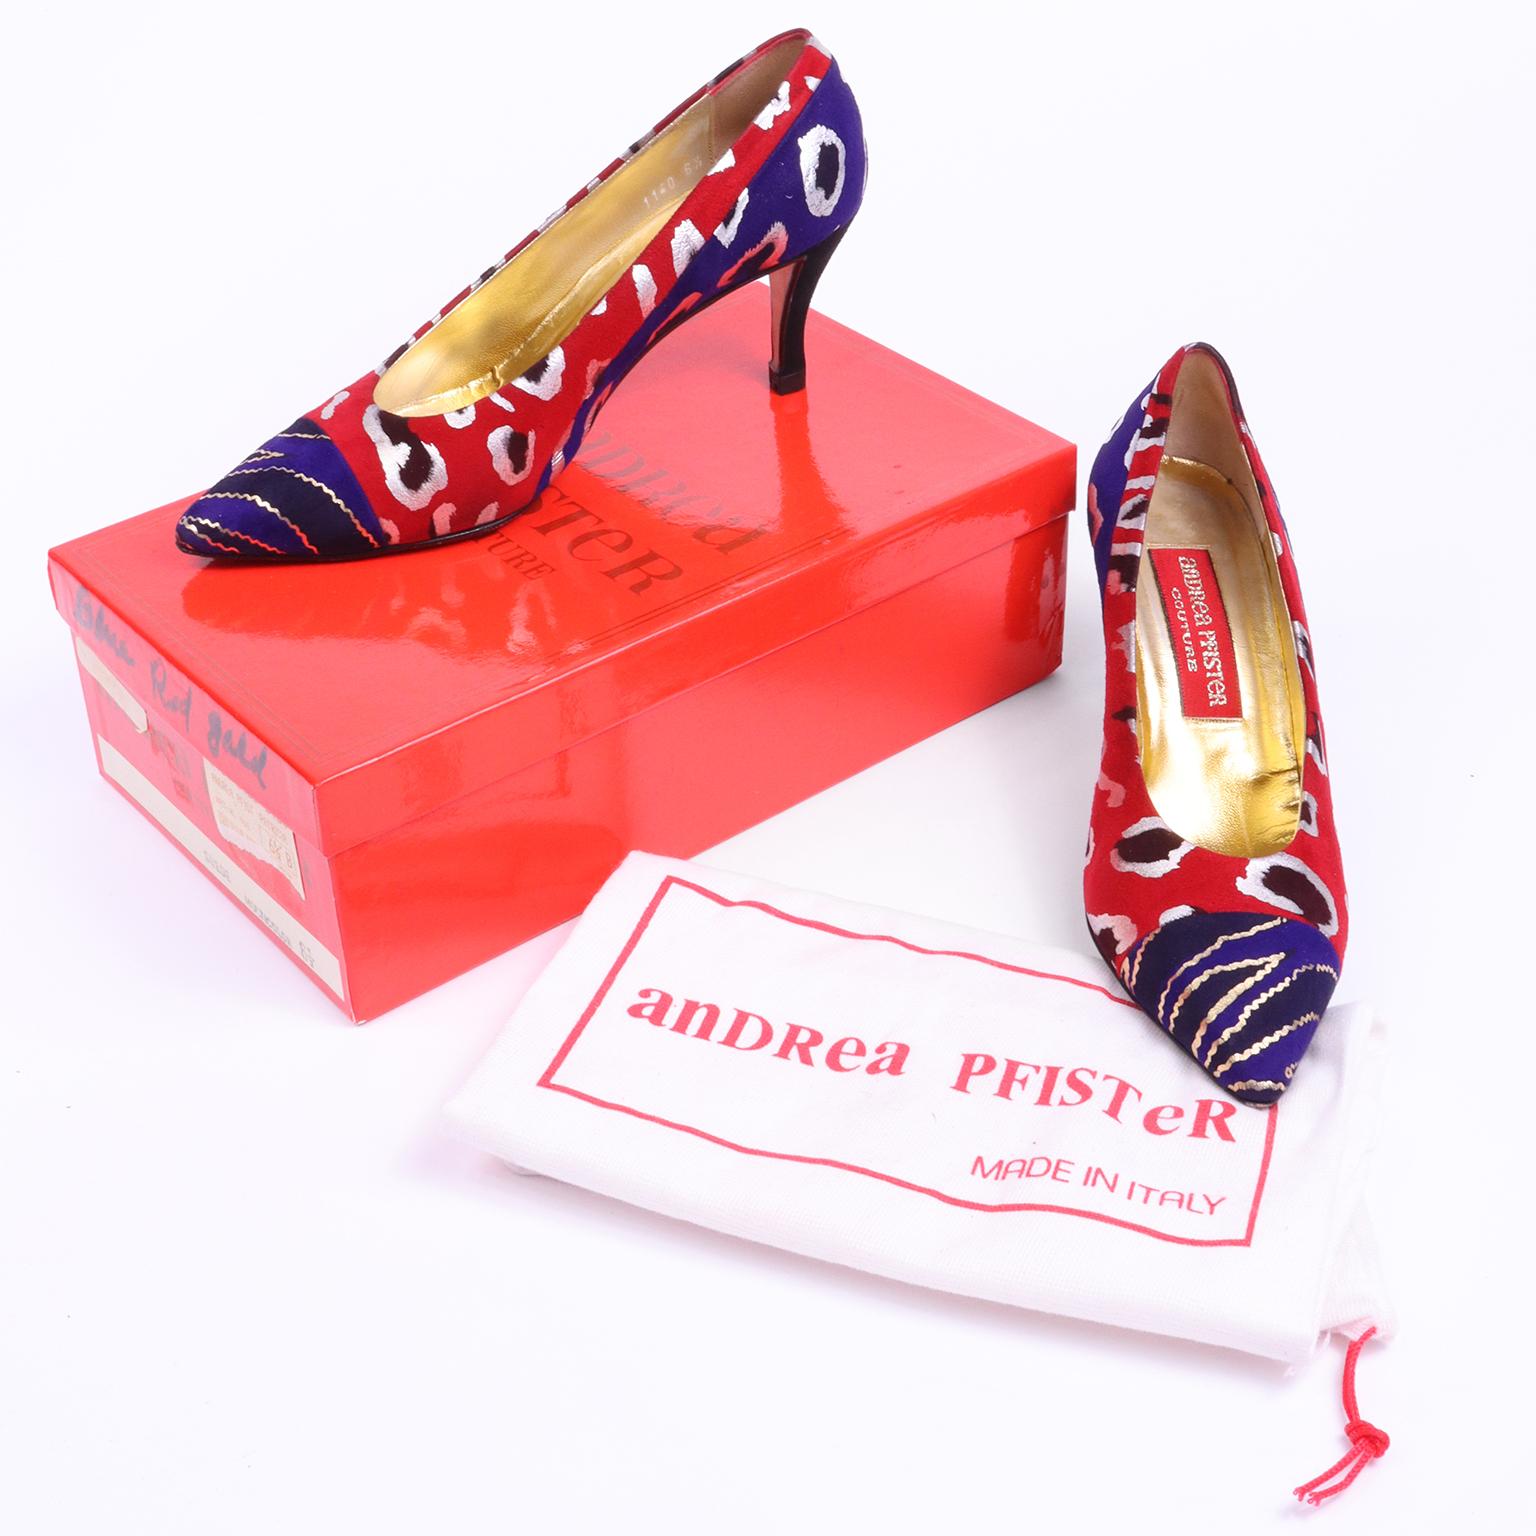 Dies sind wirklich Spaß Jahrgang Andrea Pfister Couture multicolor Wildleder Pumpen in einer Größe 6 und 1/2. Die Schuhe kommen mit ihrer ursprünglichen Box und Staubbeutel und die Box und der Stil Name ist Patricia.  Die Schuhe haben goldene und